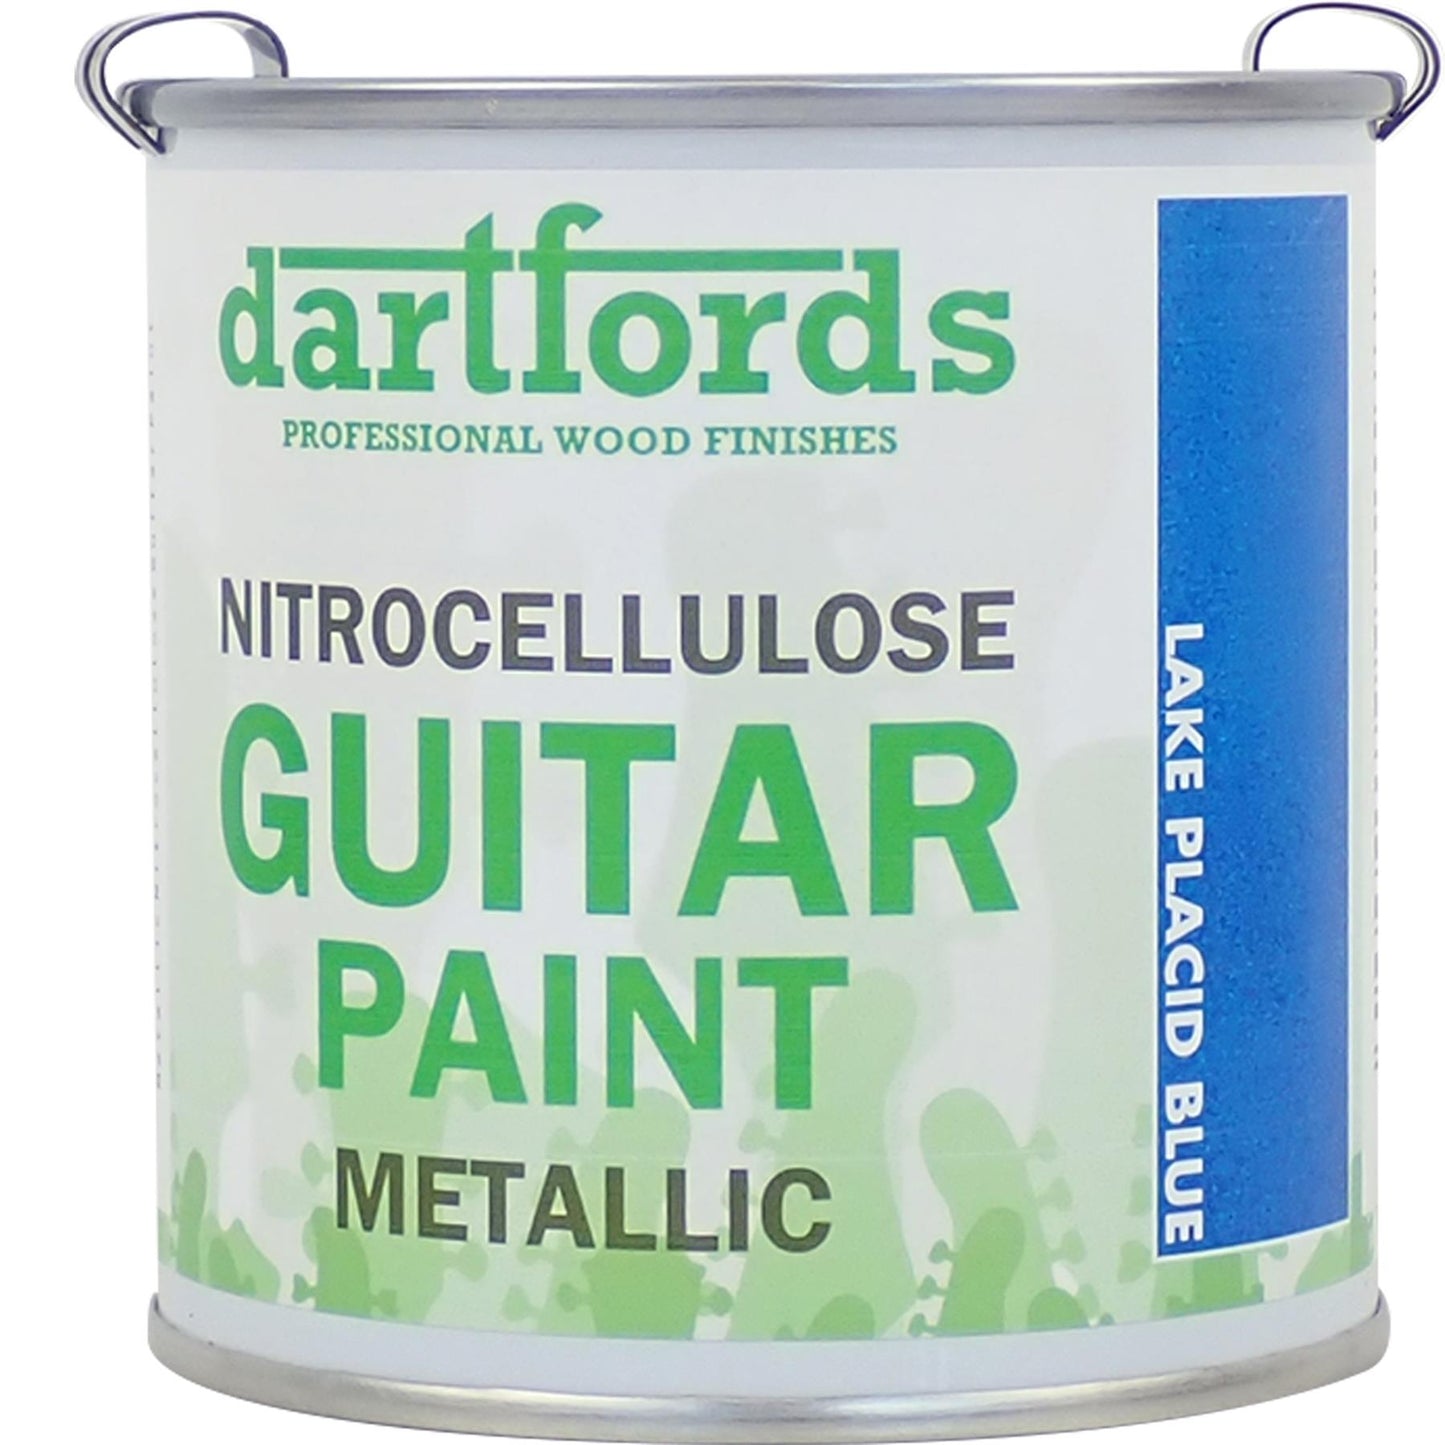 dartfords Lake Placid Blue Metallic Nitrocellulose Guitar Paint - 230ml Tin